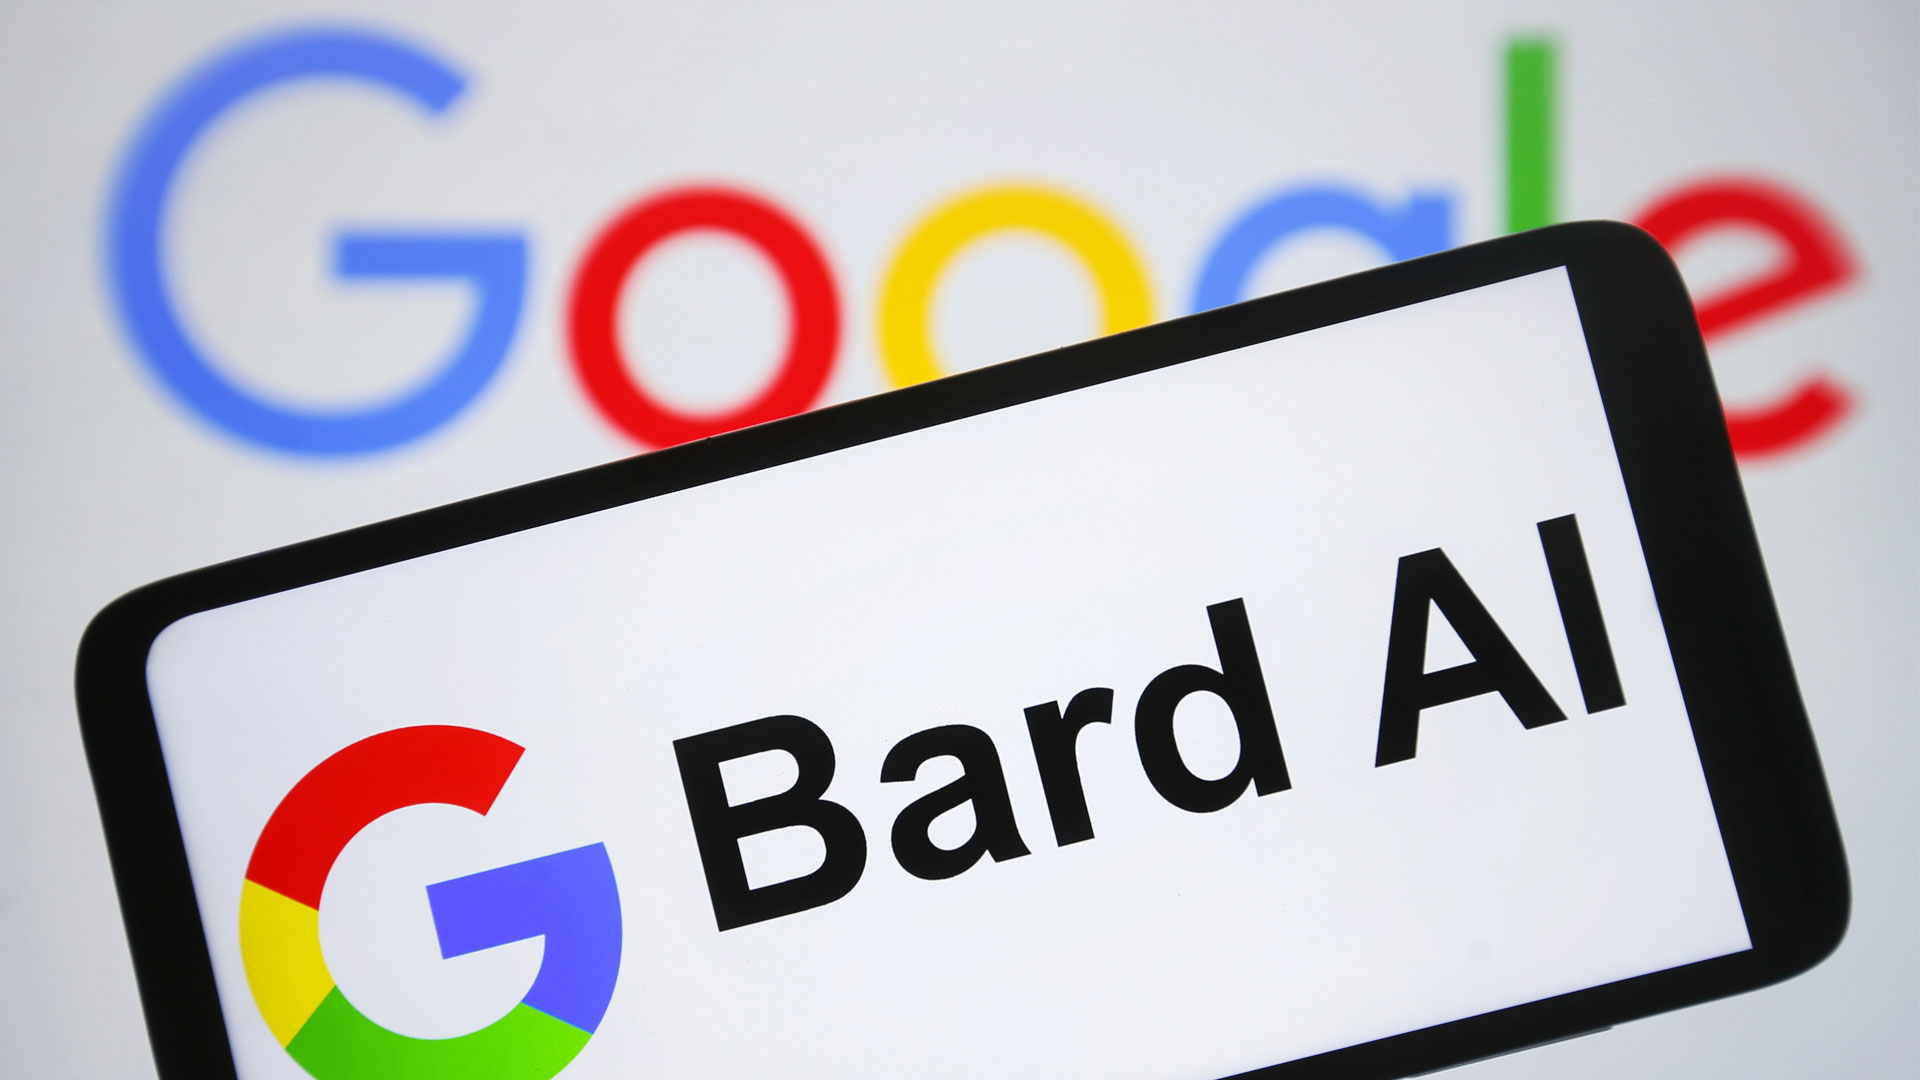 Google AI Service Bard